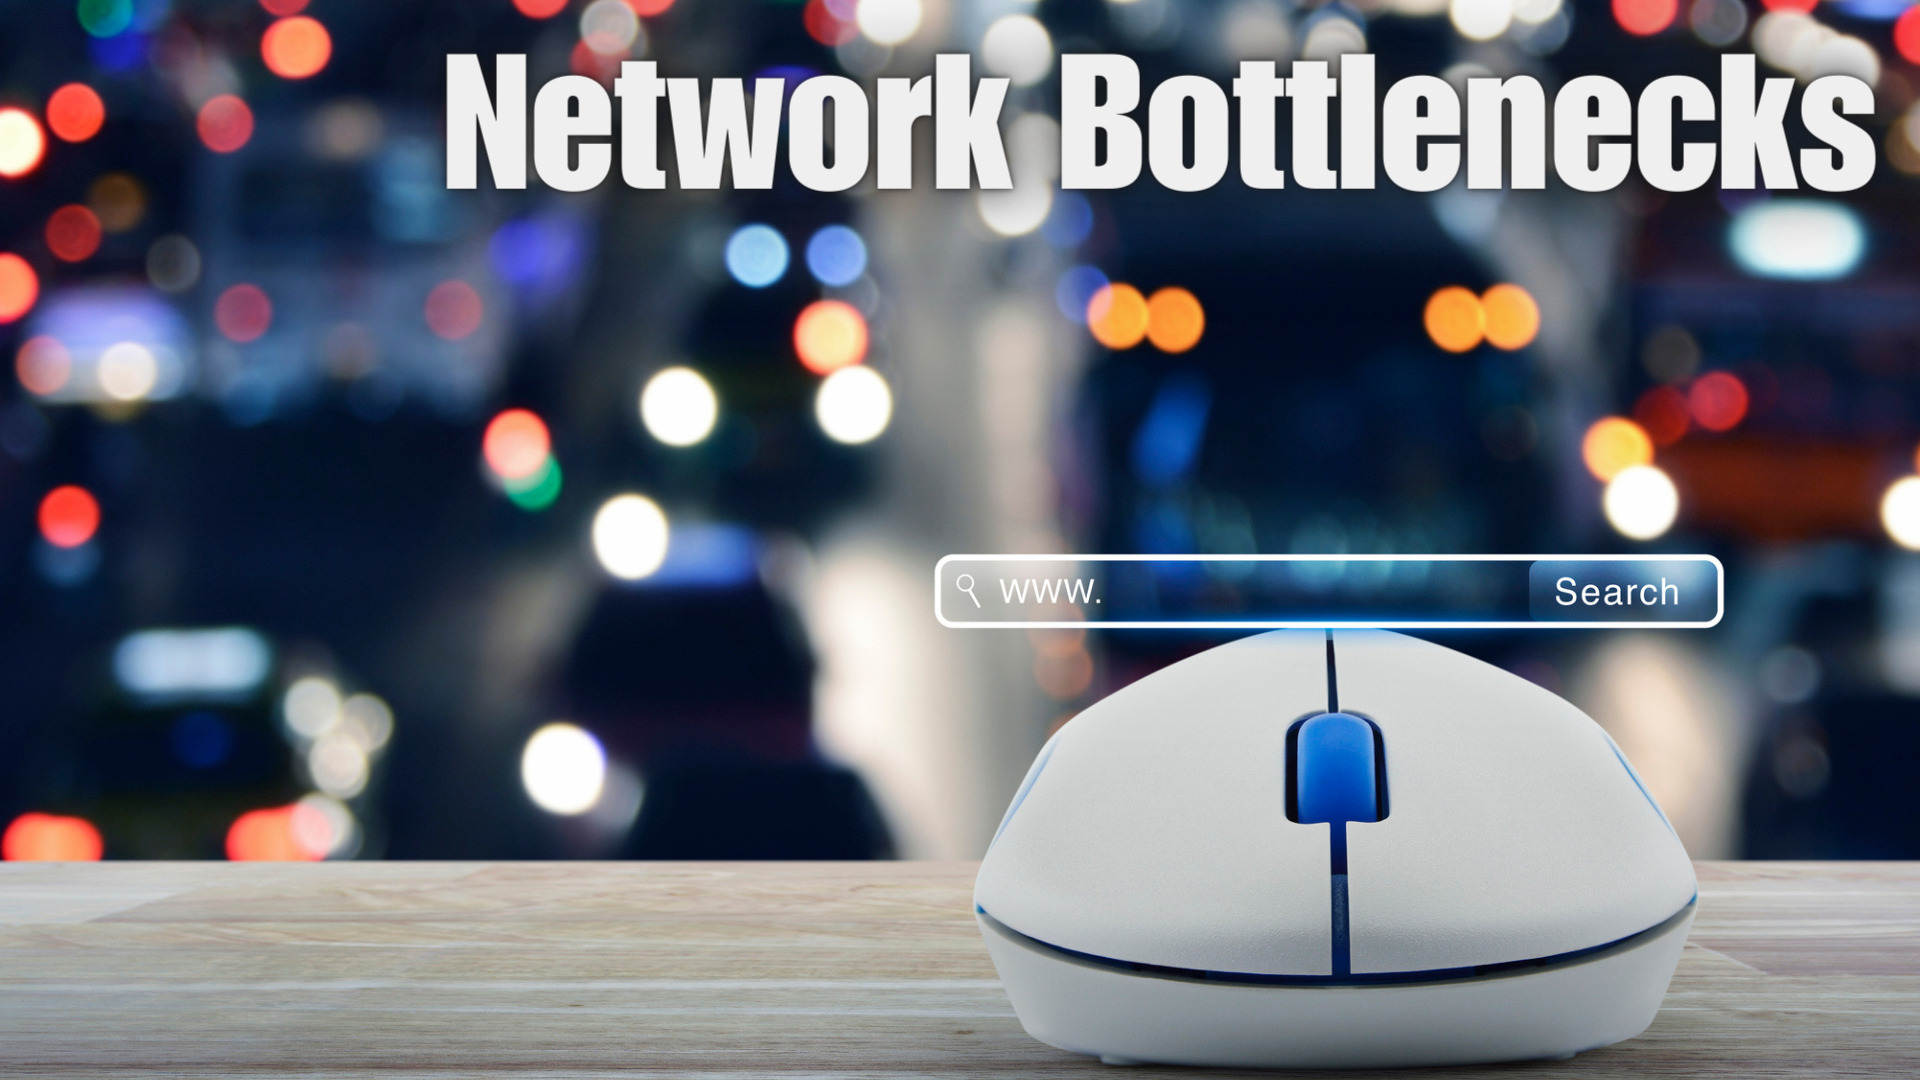 Network Bottlenecks